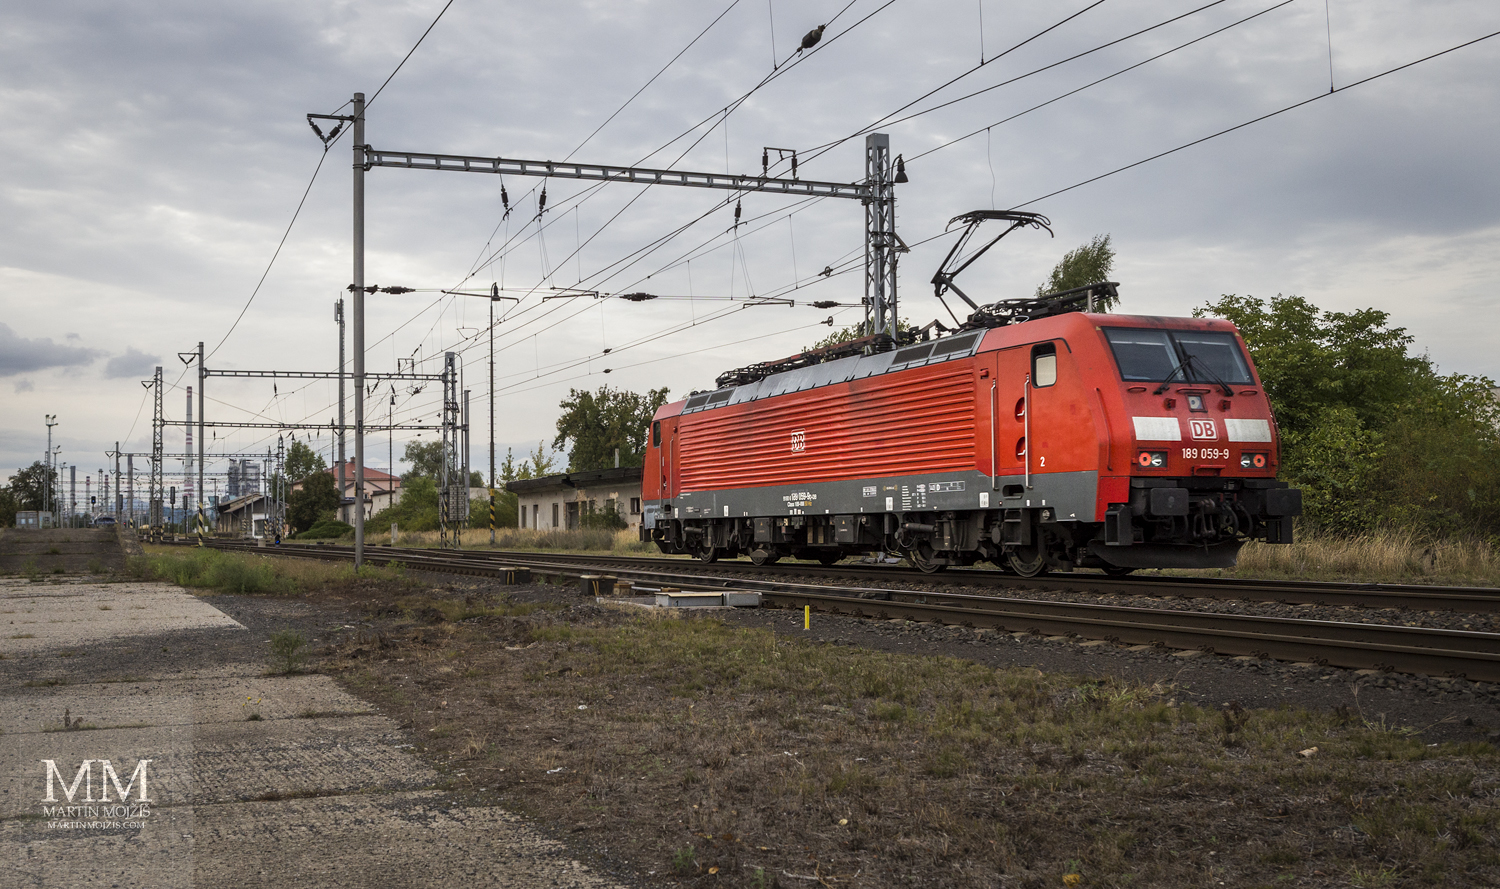 Červená lokomotiva Deutsche Bahn DB 189 059-9.